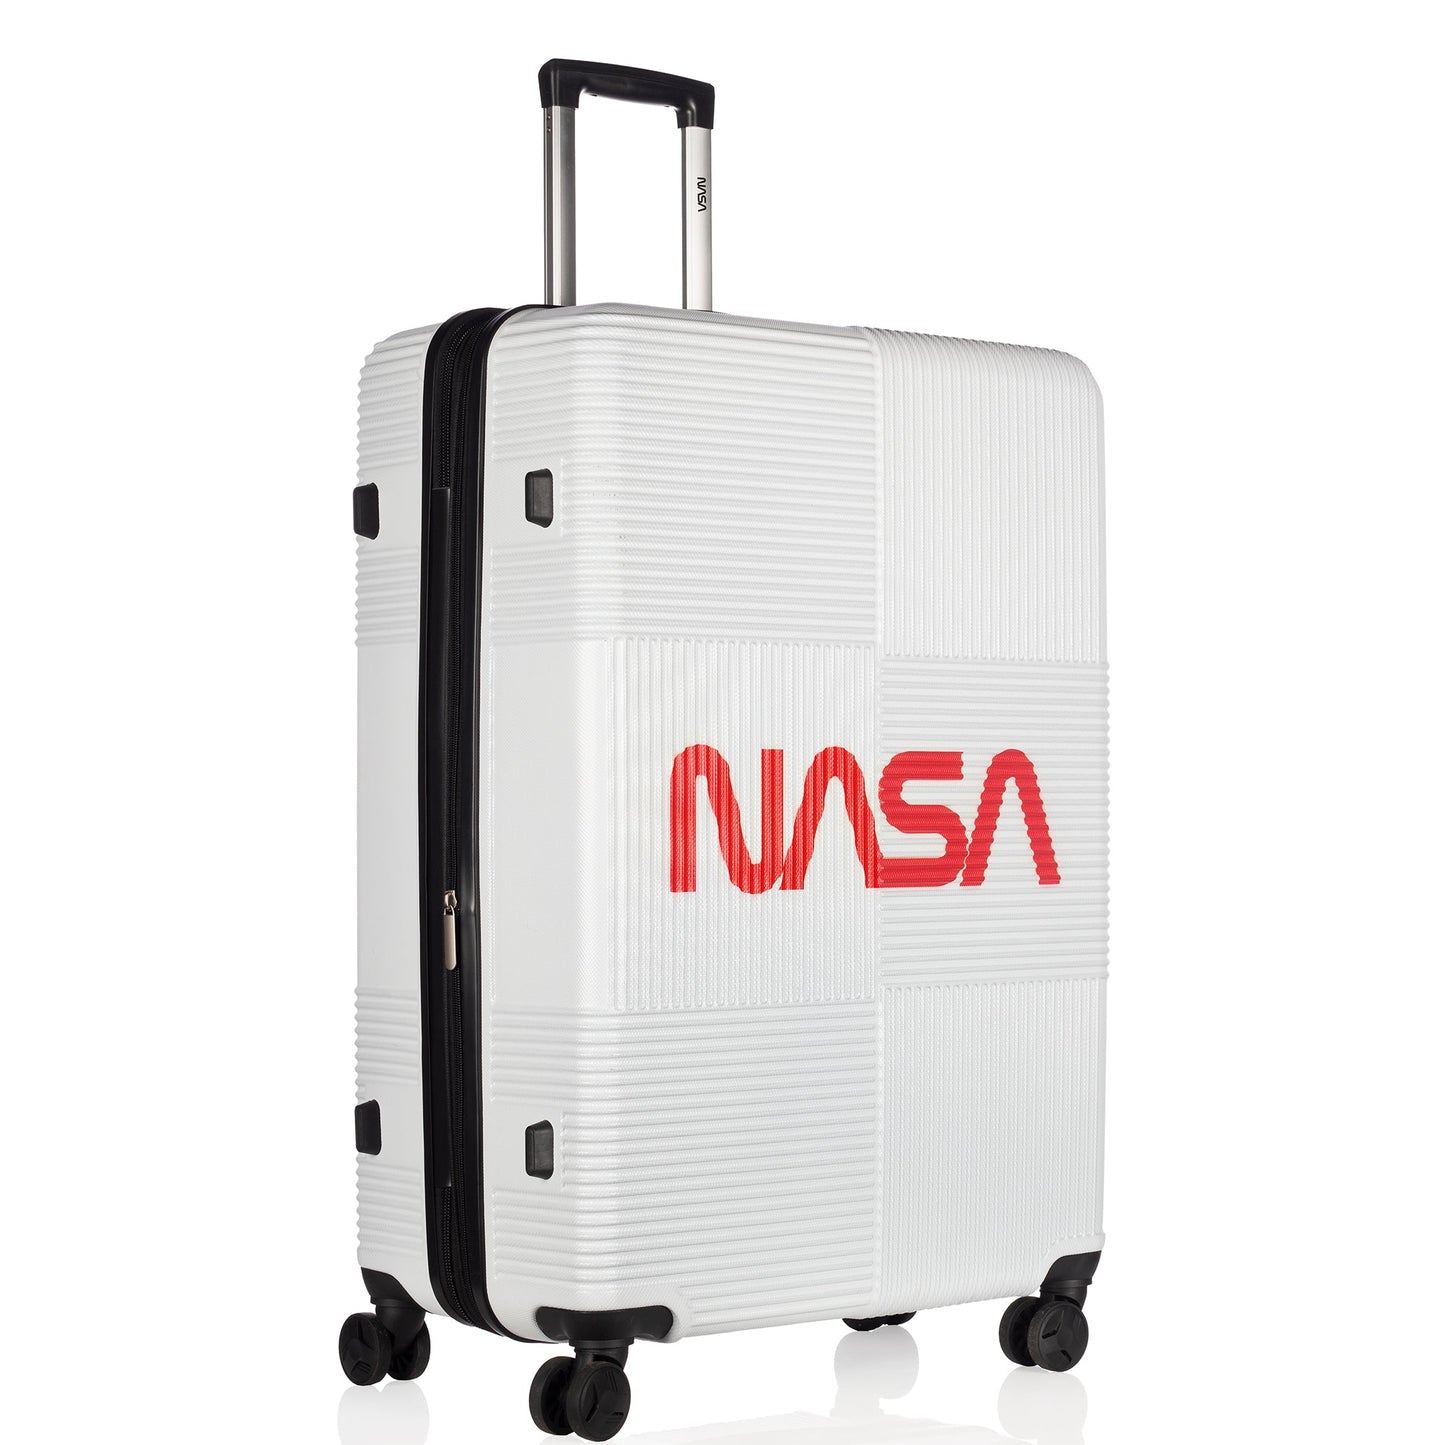 Nasa Orvit Collection White Luggage (22/26/30") Suitcase Lock Spinner Hardshell